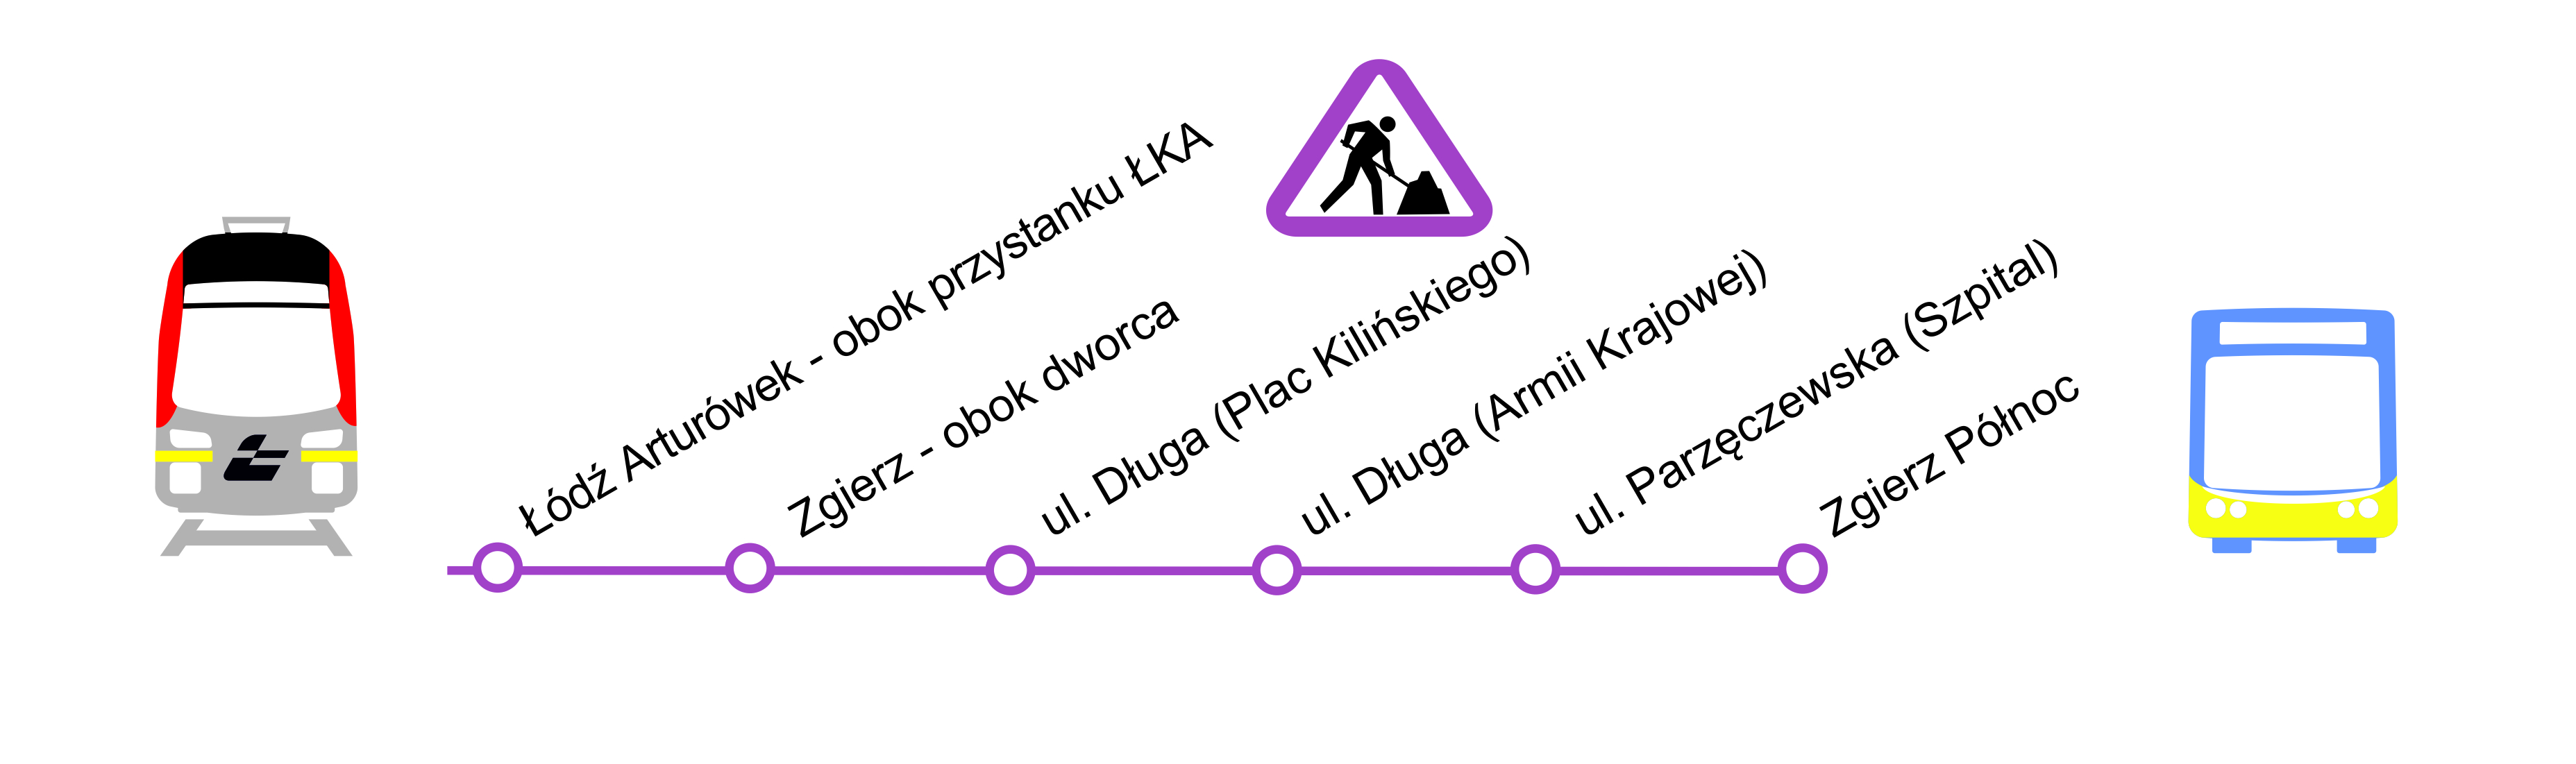 schemat przystanków Zastępczej Komunikacji Autobusowej, opis poniżej